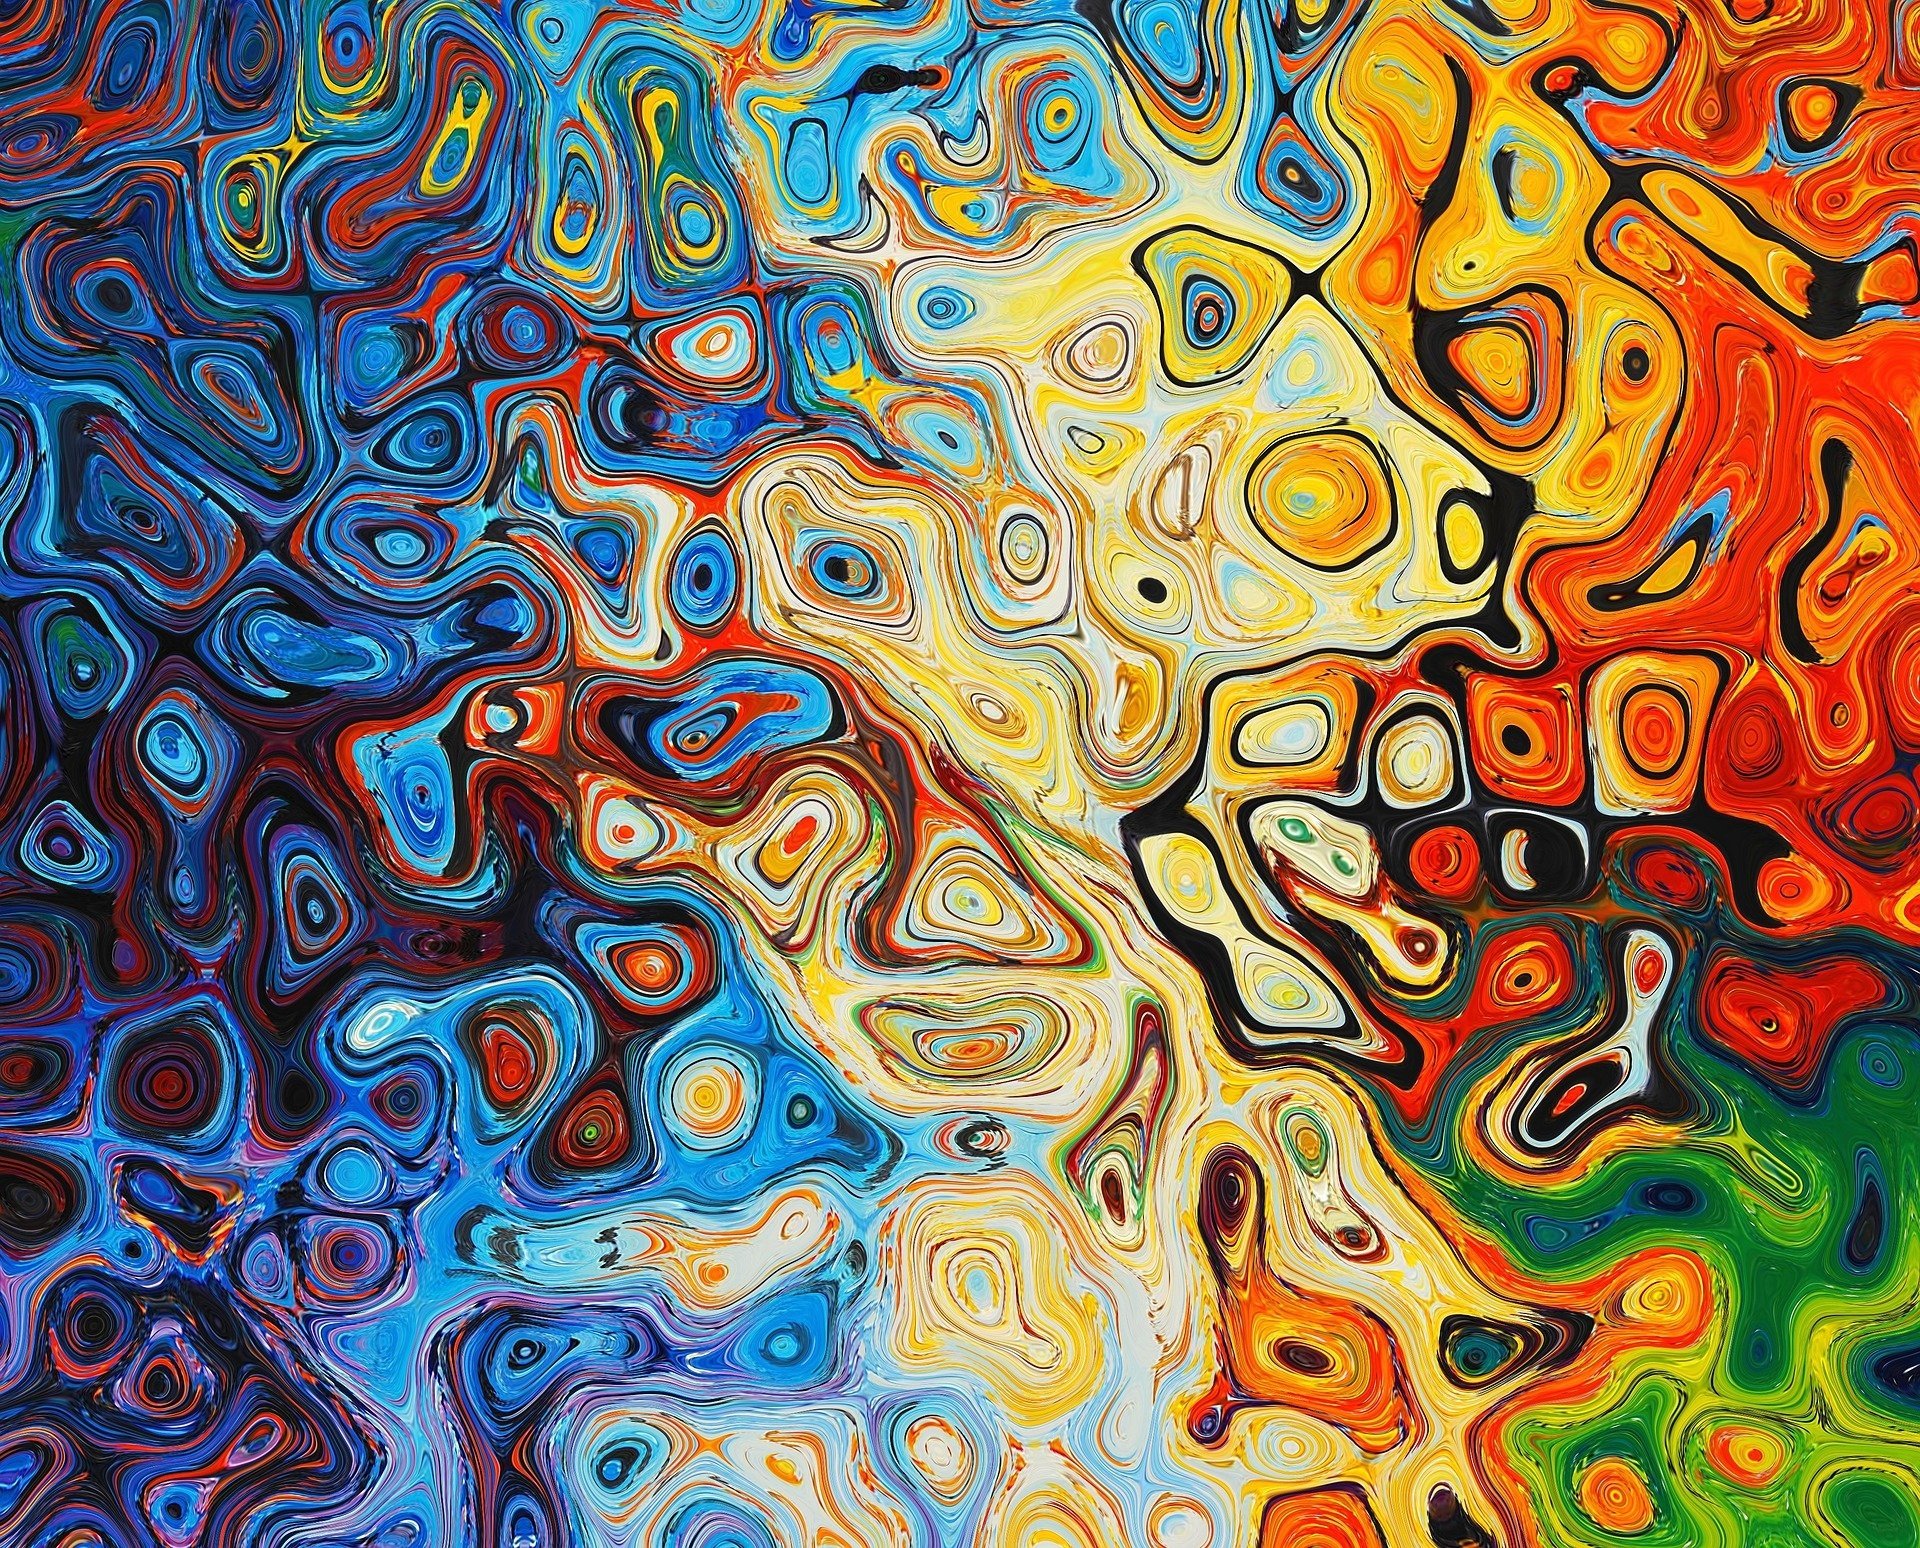 Colorful Digital Art